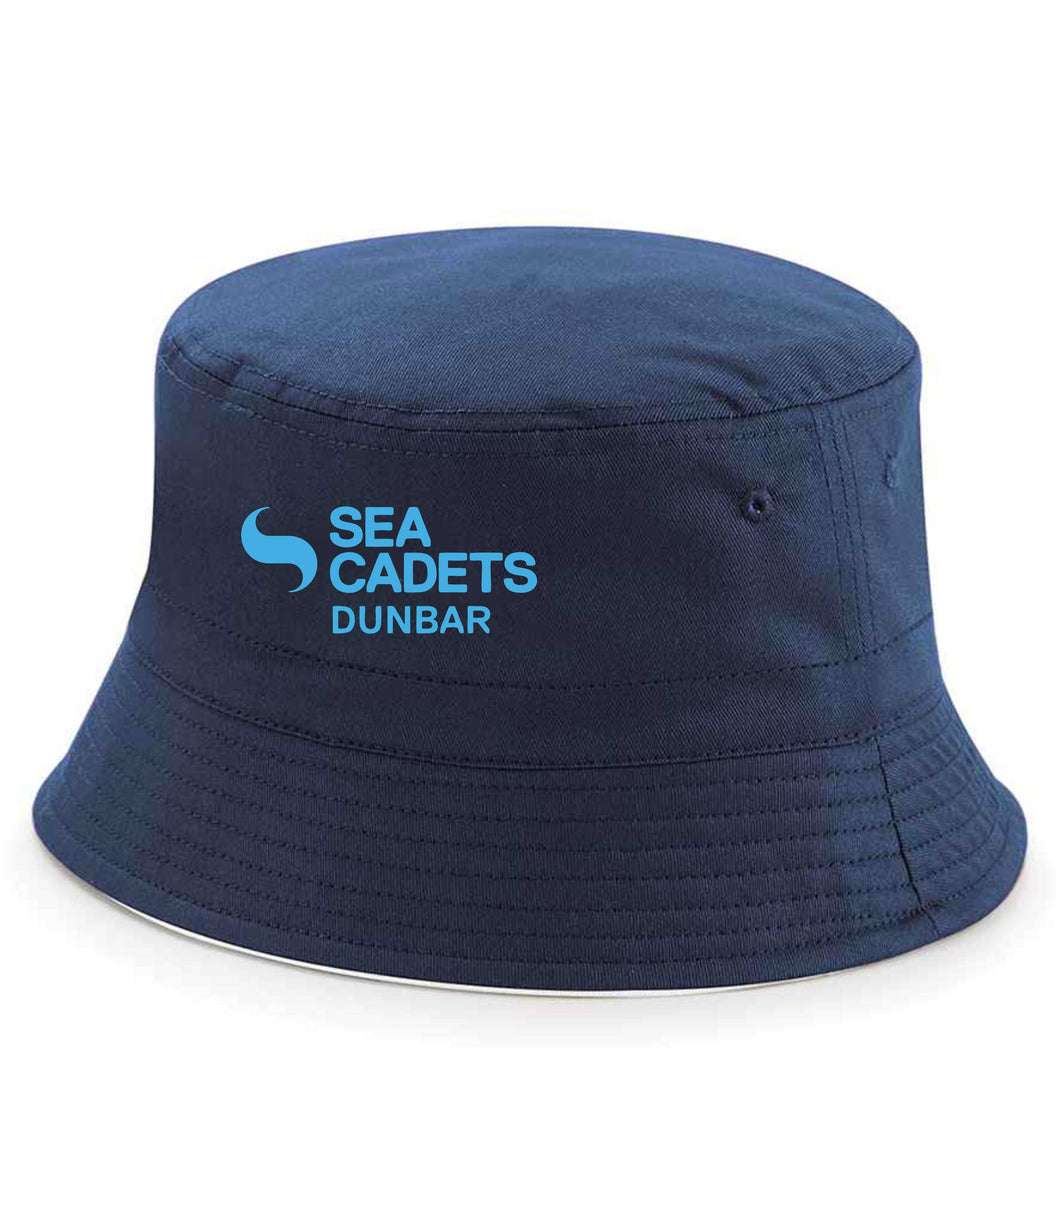 Dunbar Sea Cadets Bucket hat